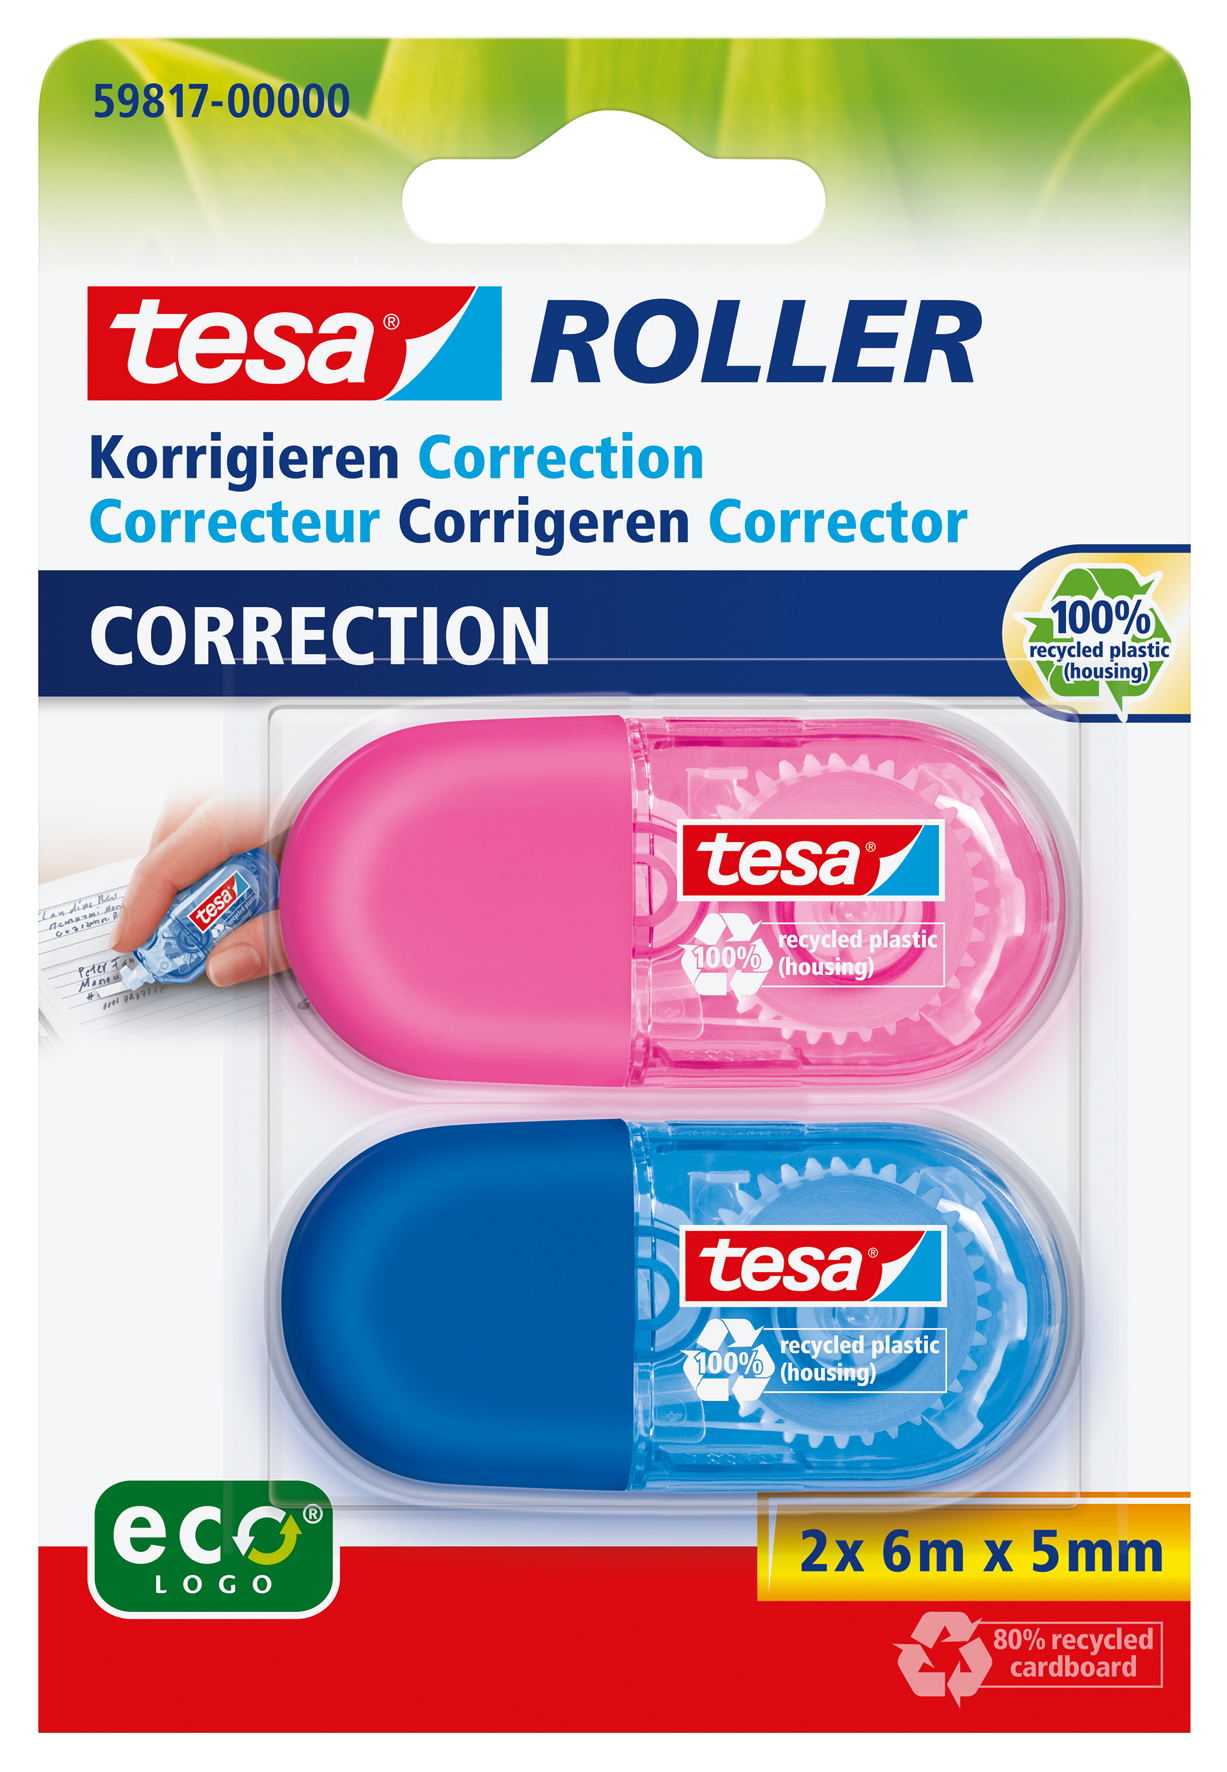 TESA Roller correction Min 5mmx6m 598170000 2 couleurs ass.